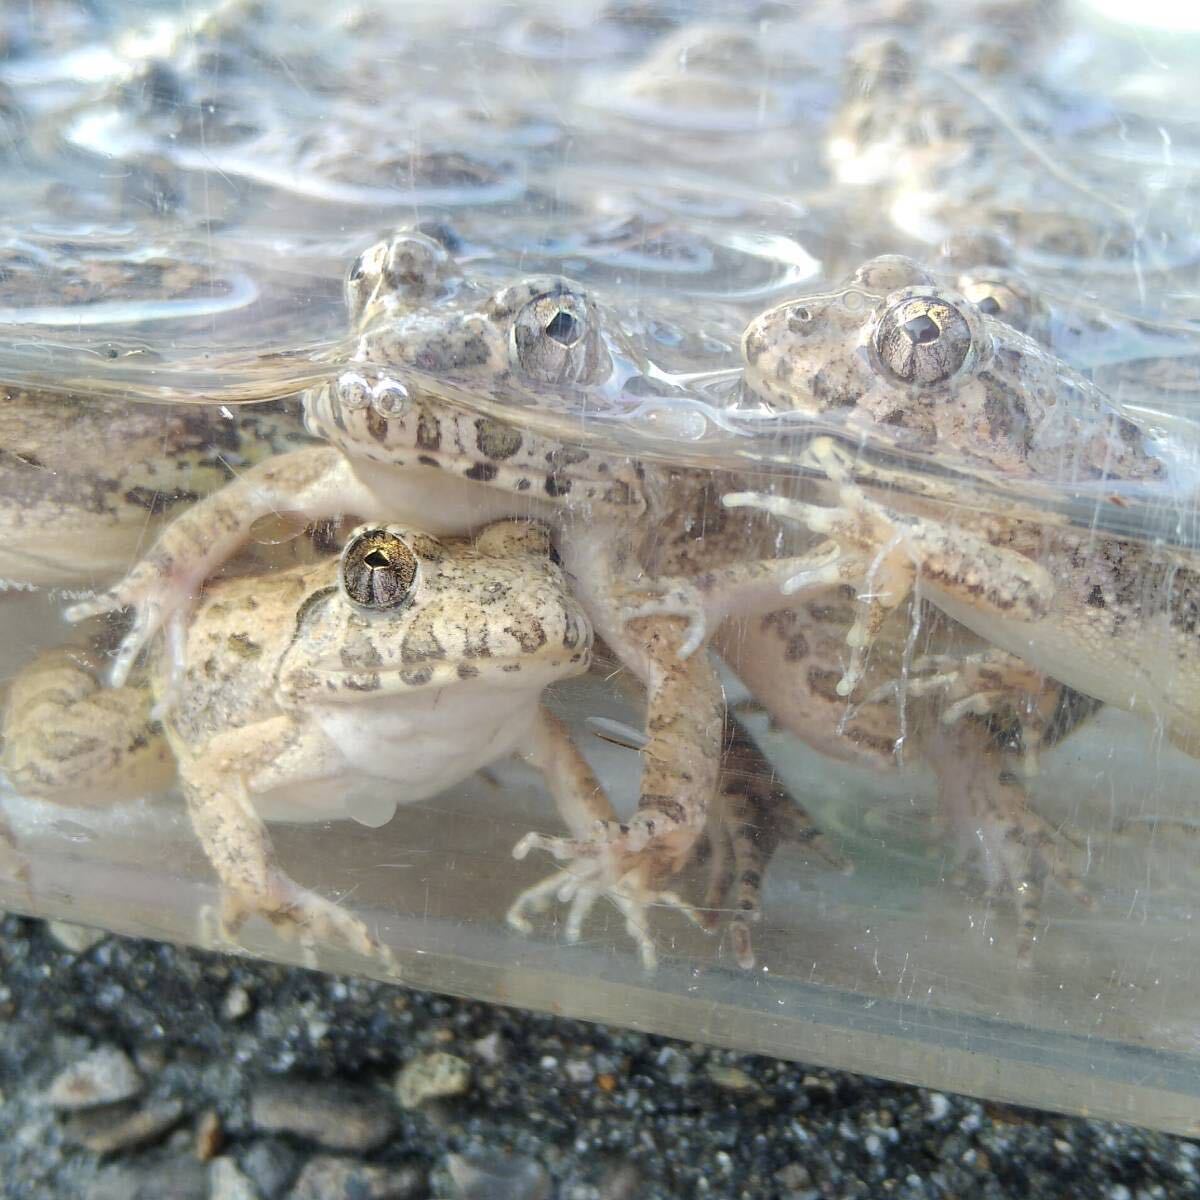 [M*10 pcs +α] bait bait for frog . bait approximately 3~4cmnmaga L feed for .. taking kerolium reptiles .. bait snake. bait ... bait CB